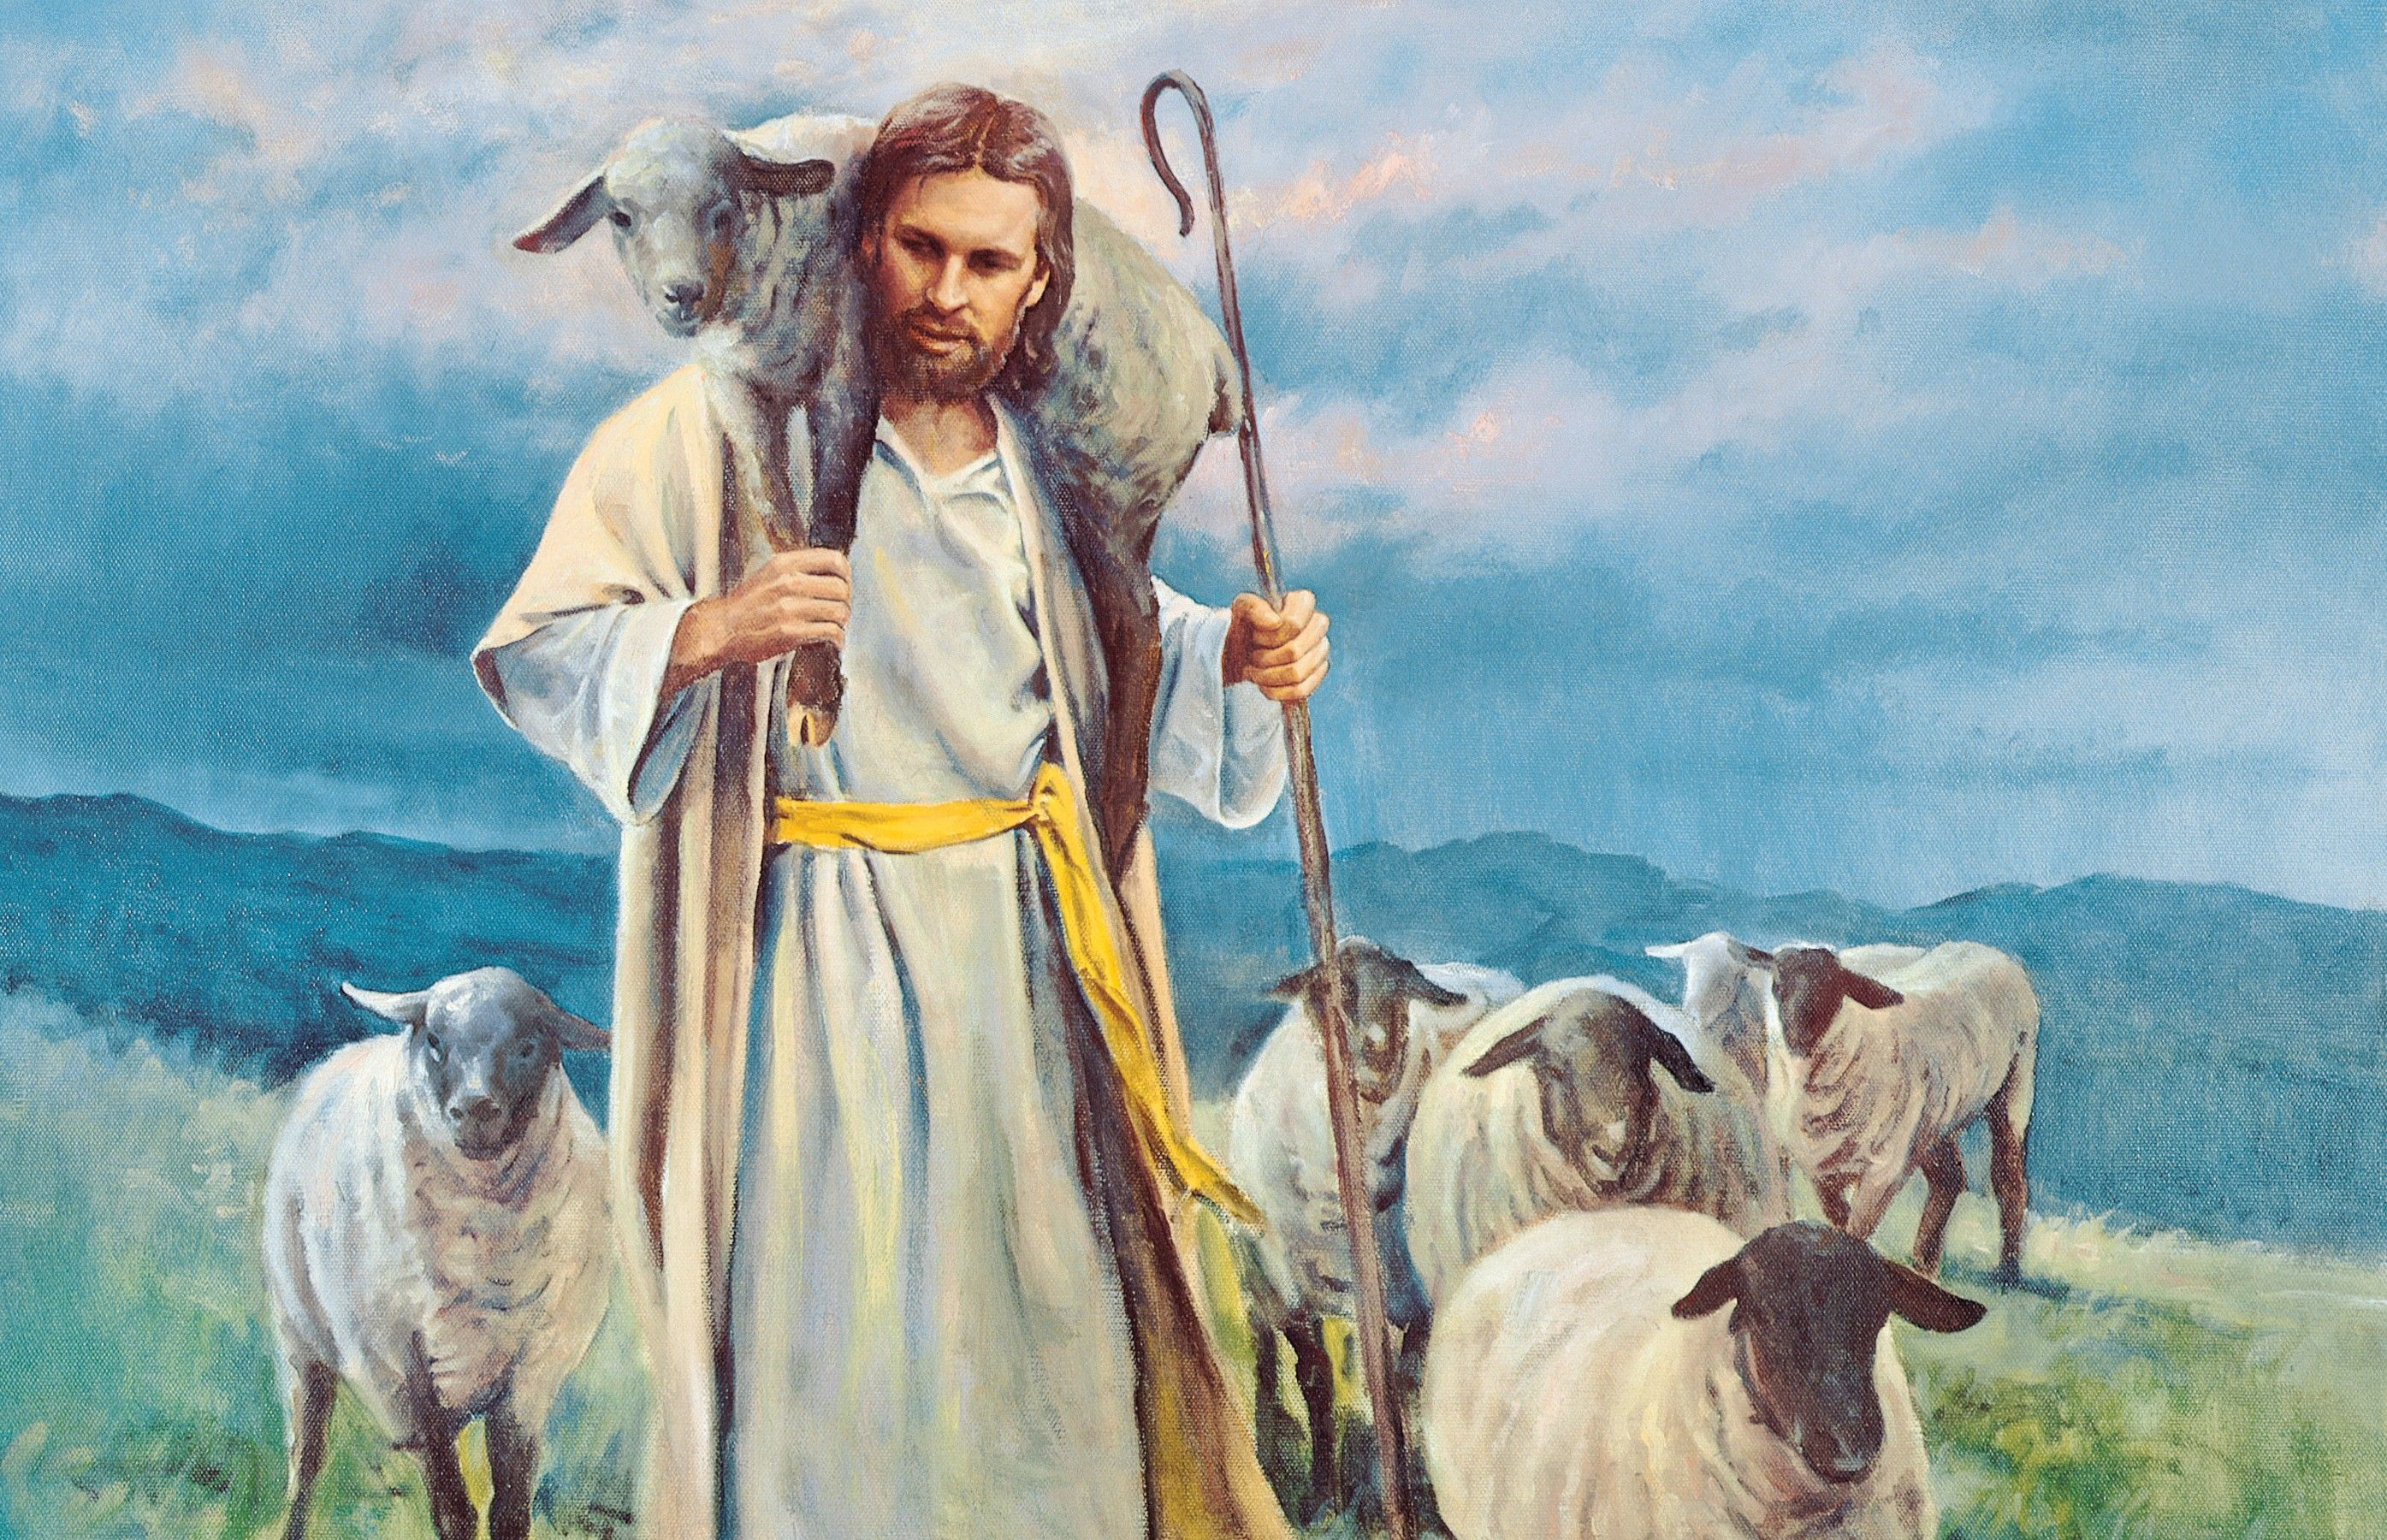 Poster Phim Kẻ Yêu Nước Cuồng Tín (The Good Shepherd)